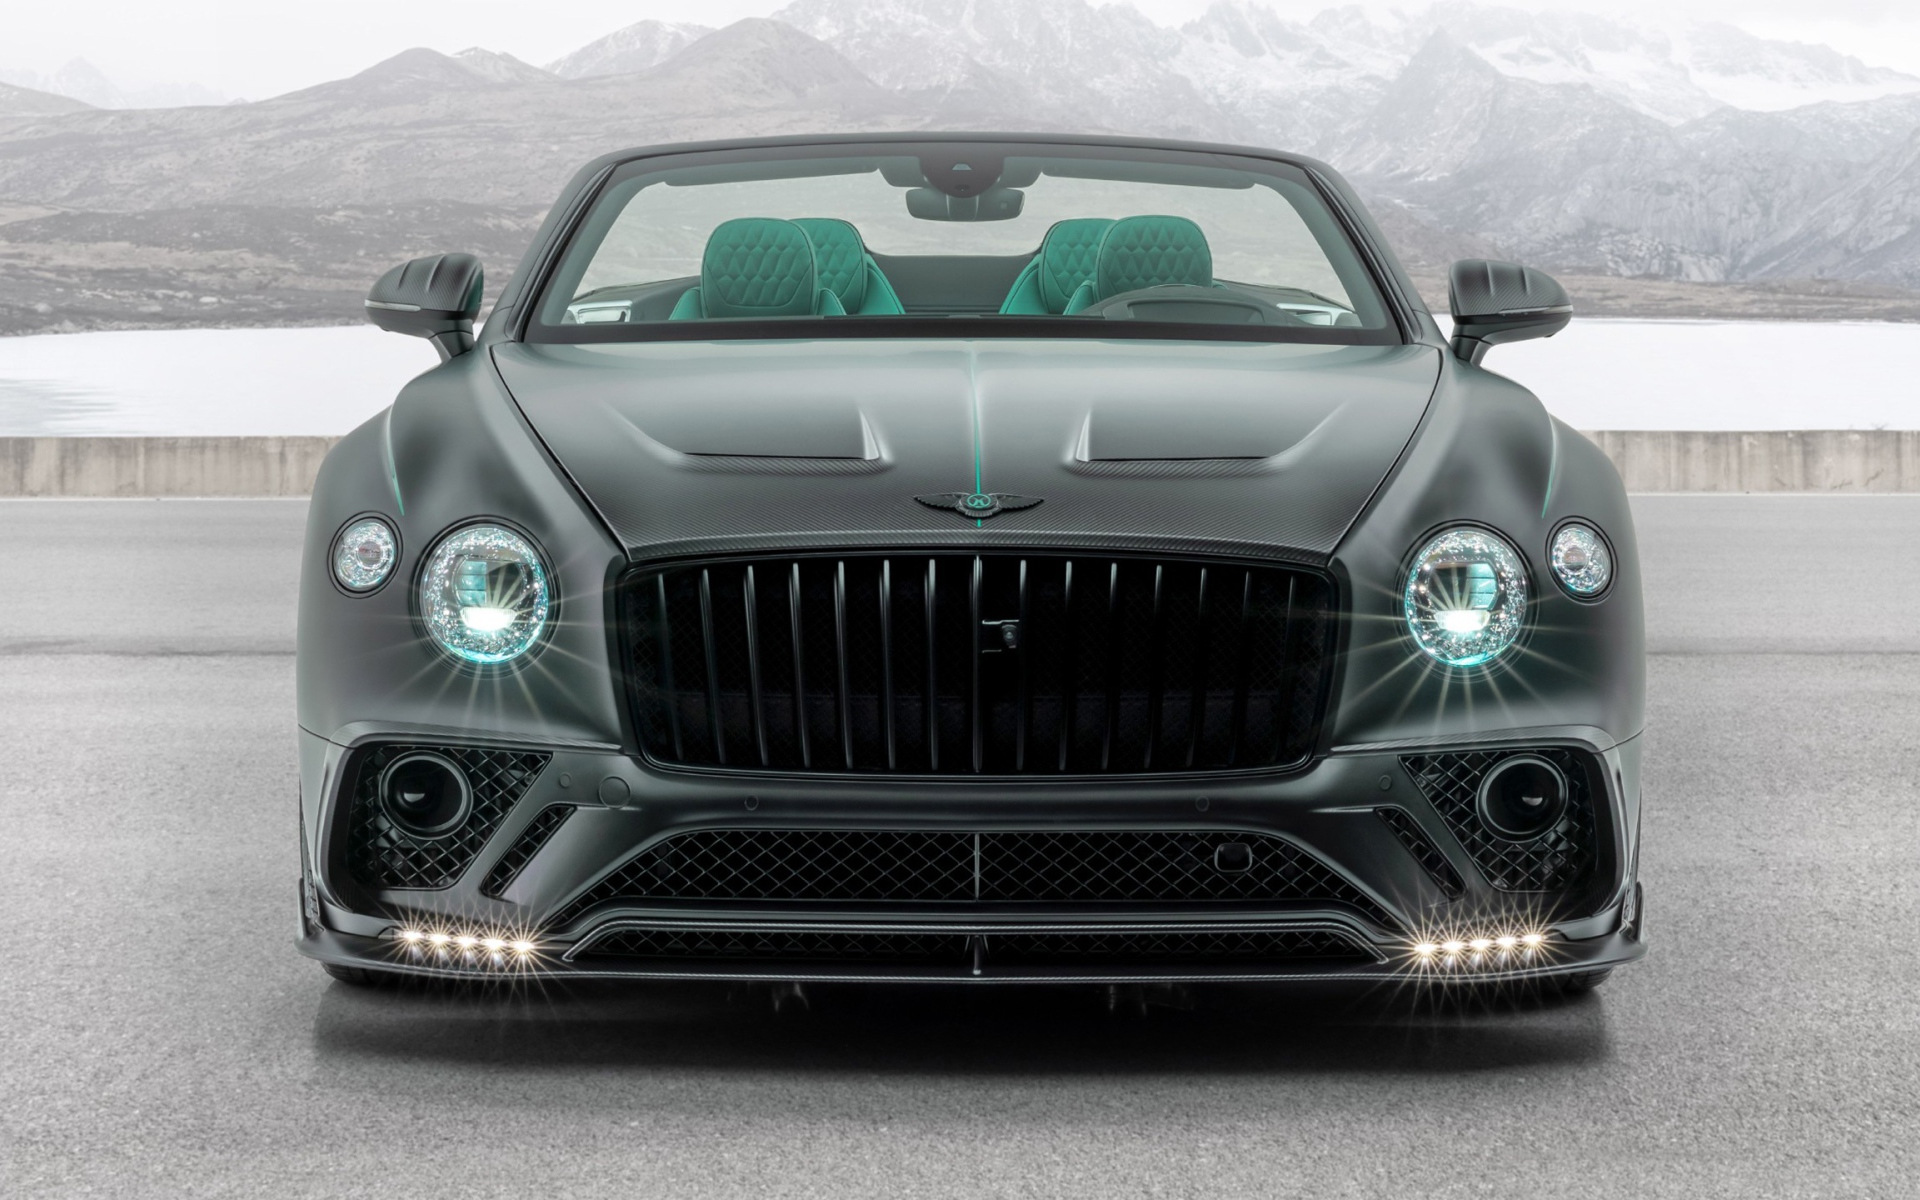 Автомобиль Mansory Bentley Continental GT V8 Convertible 2020 года с включенными фарами